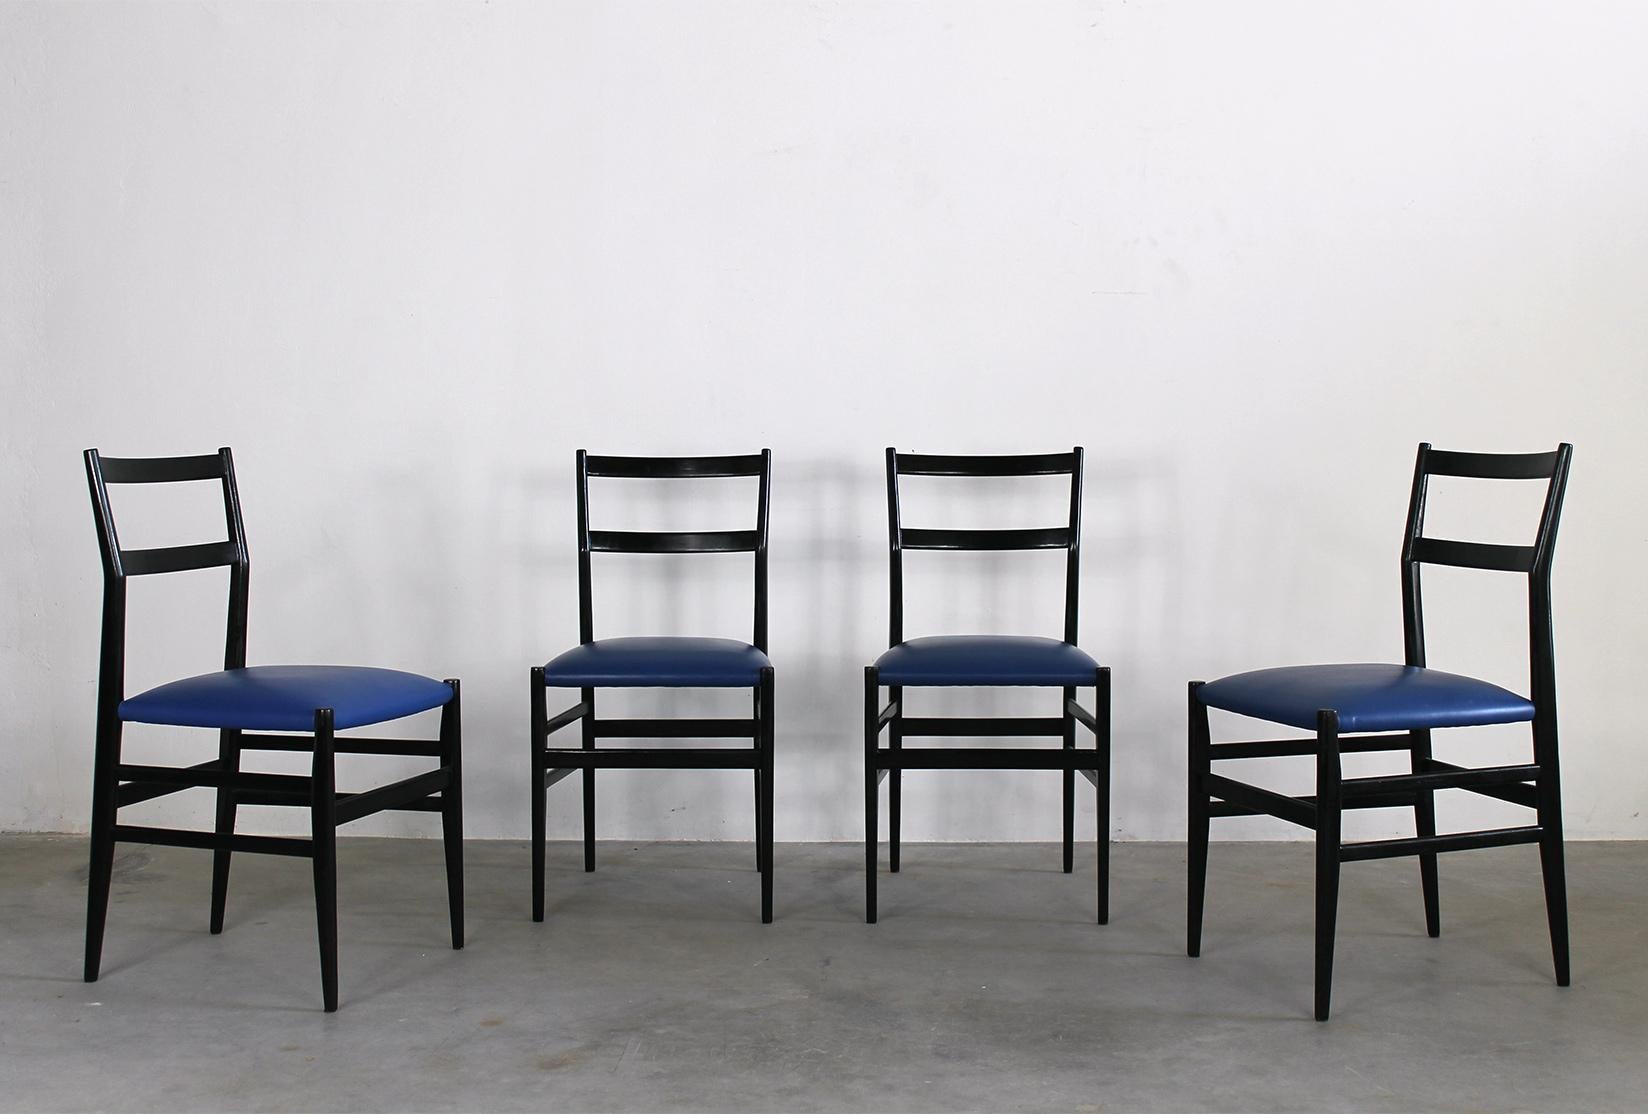 Ensemble de quatre chaises de salle à manger Leggera avec structure en bois laqué noir et assise en simili-cuir bleu rembourré, conçues par Gio Ponti et fabriquées par Cassina en 1951.

Leggera est une chaise simple, à la forme polie, claire et